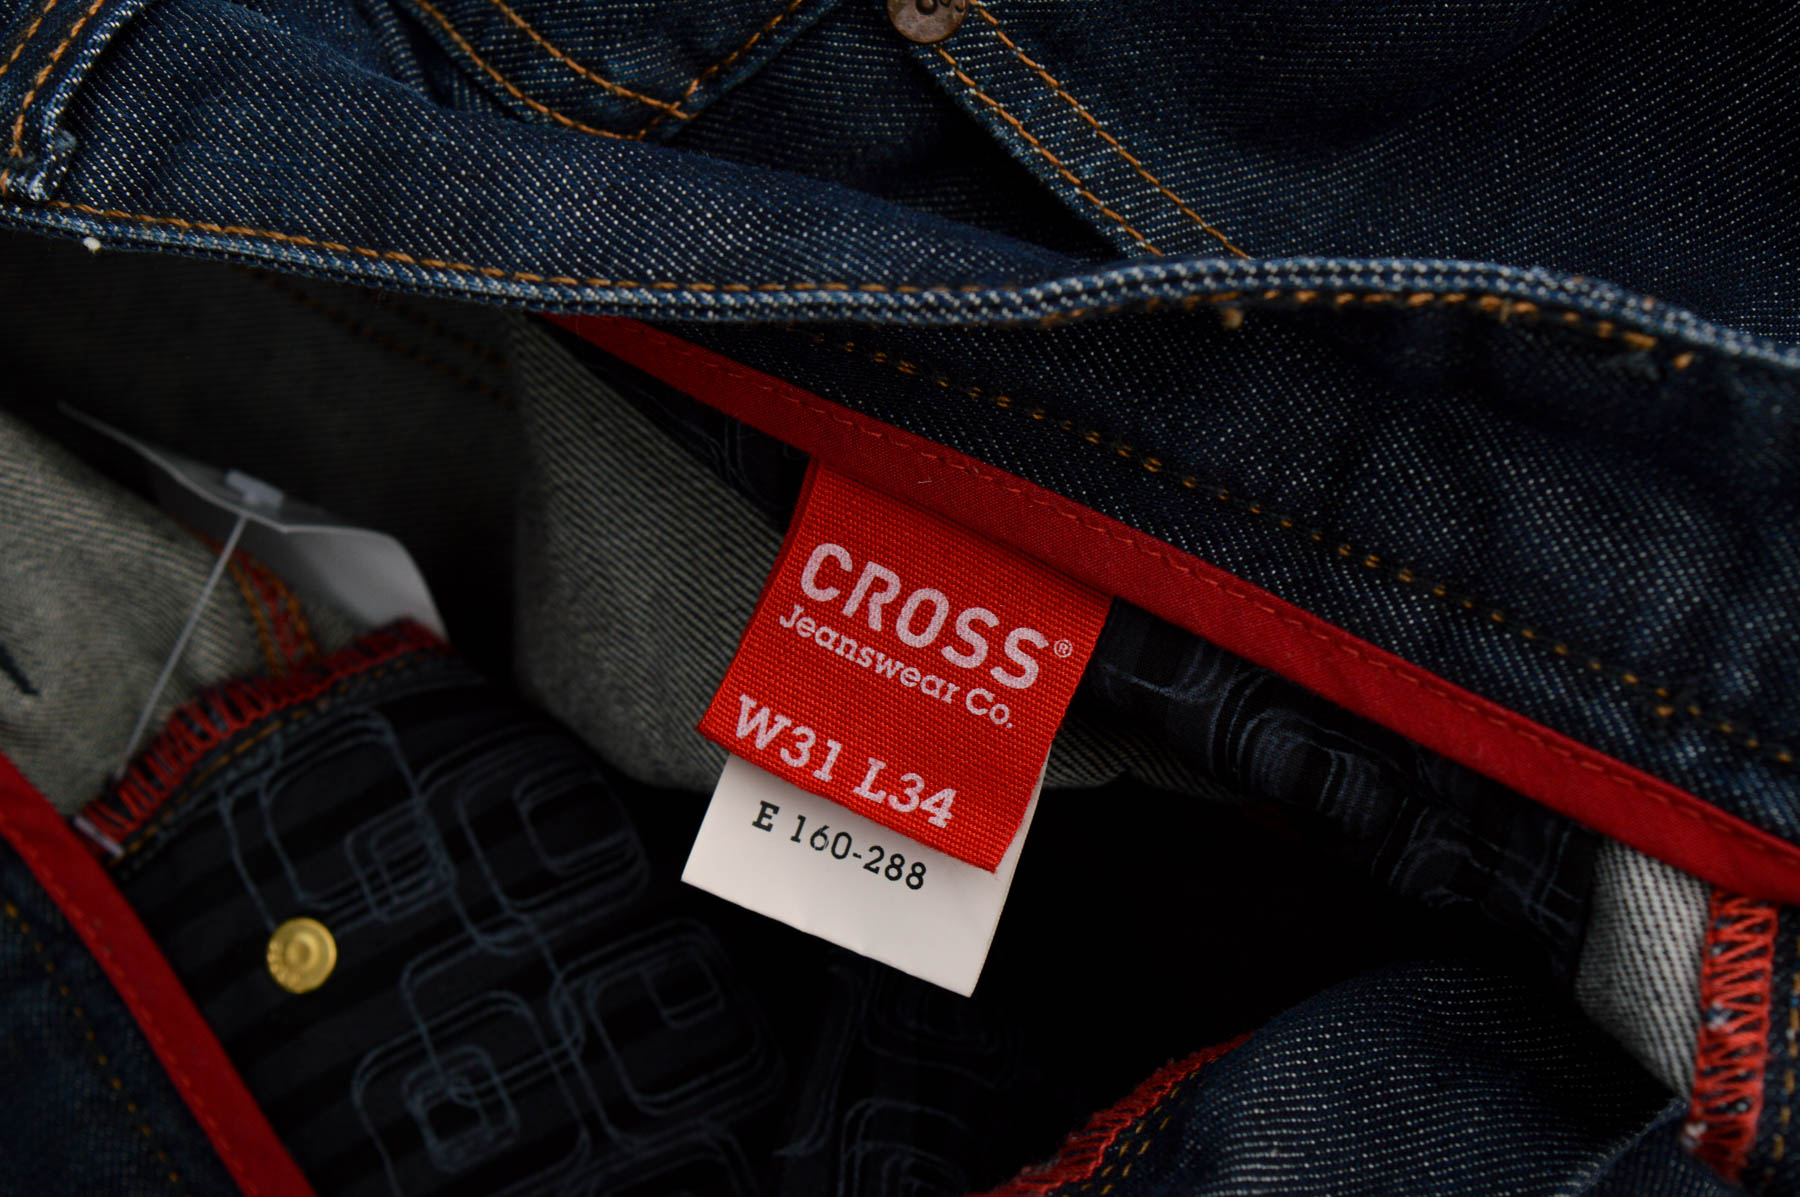 Men's jeans - Cross Jeans - 2